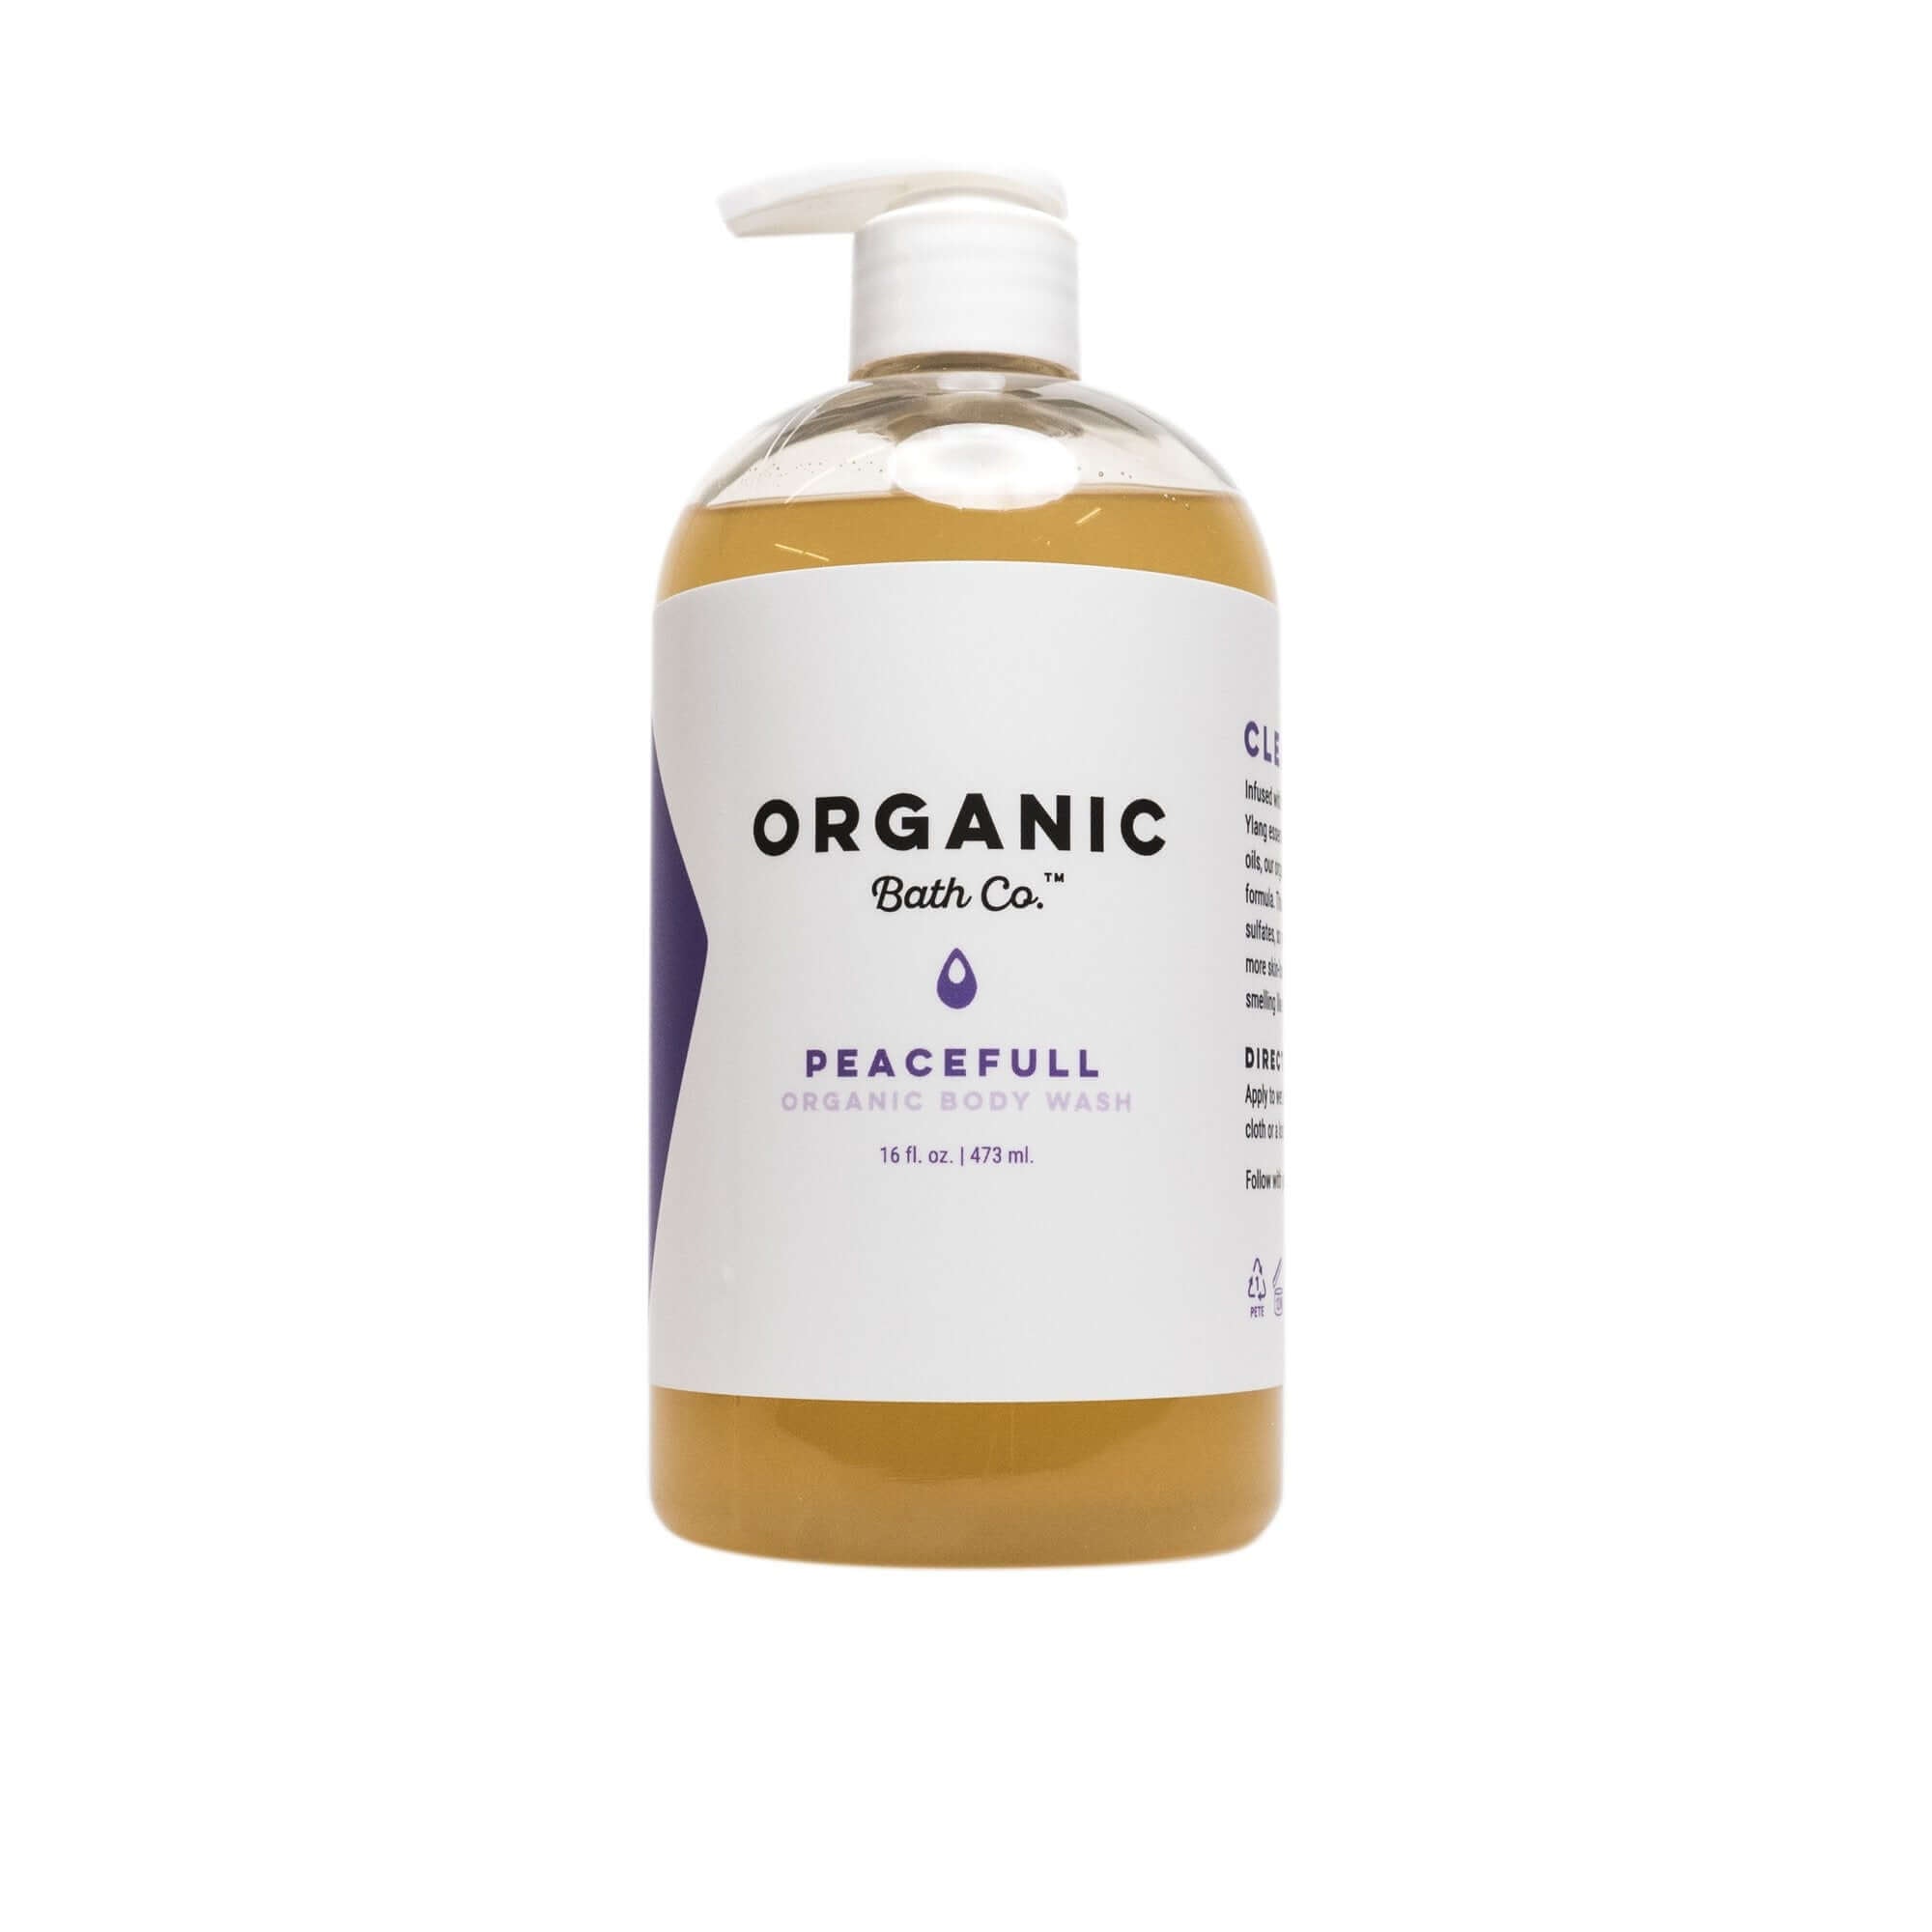 Organic Bath Co. Peacefull Body Wash